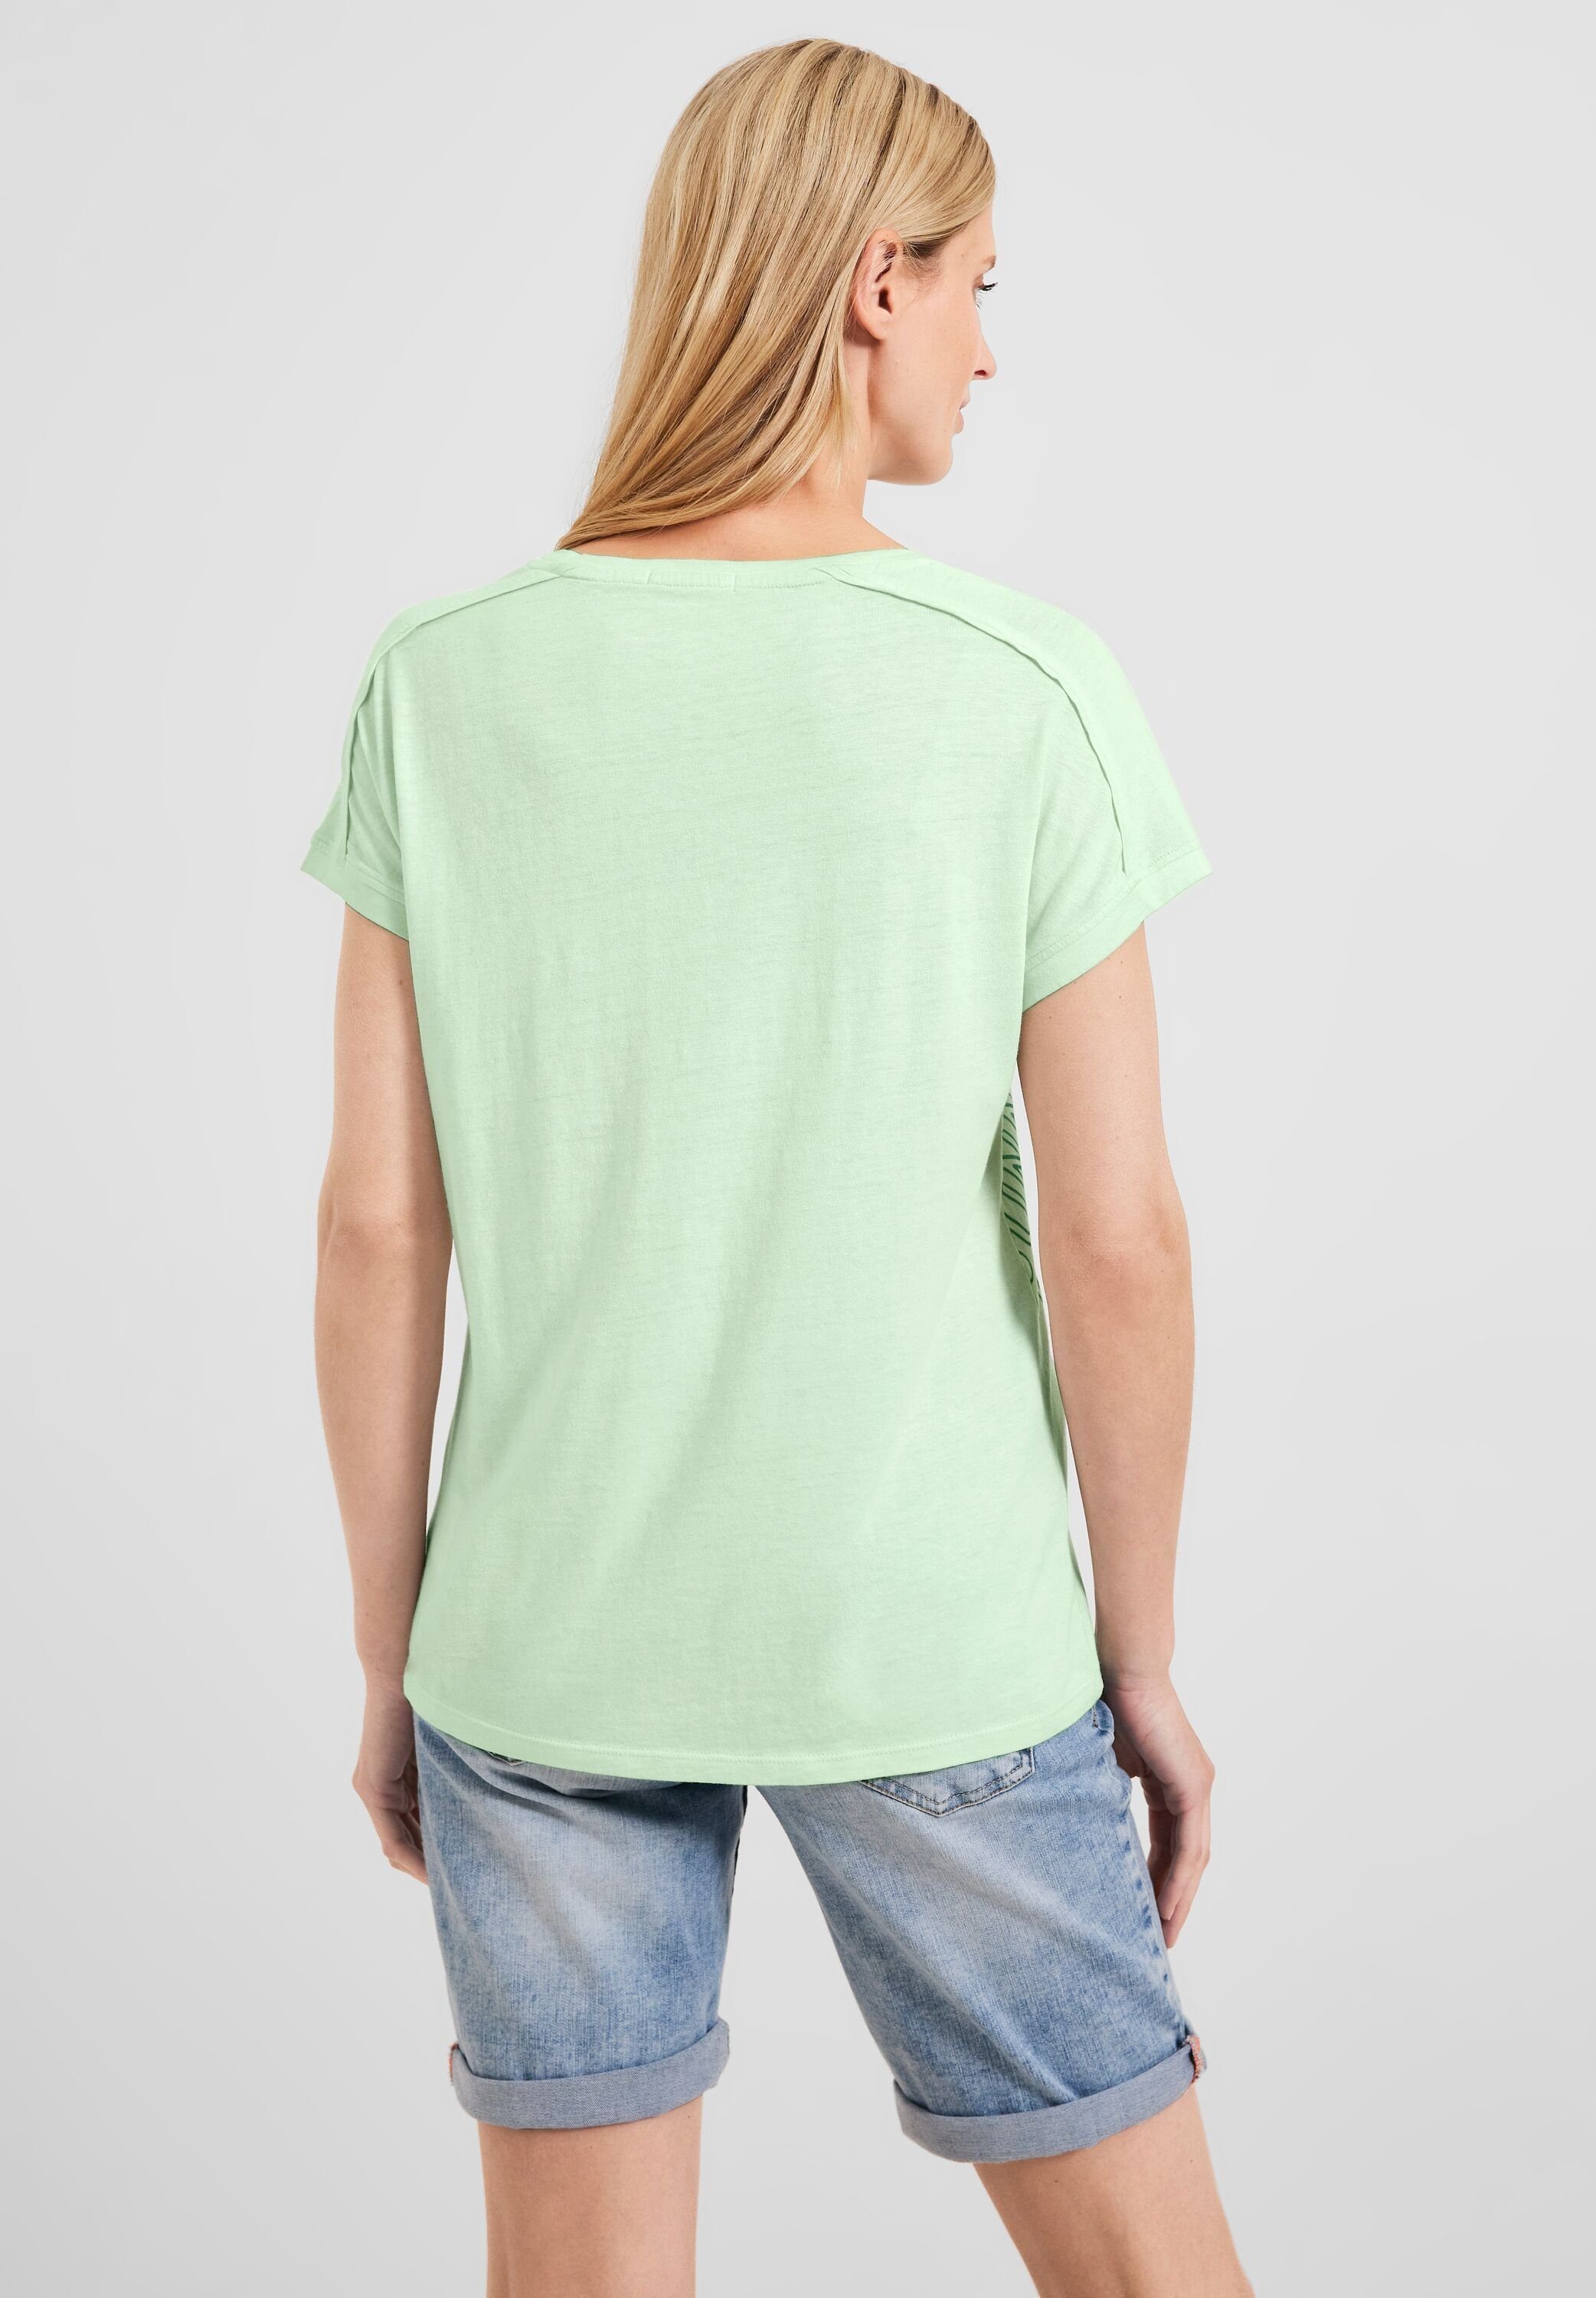 salvia green T-Shirt fresh Cecil